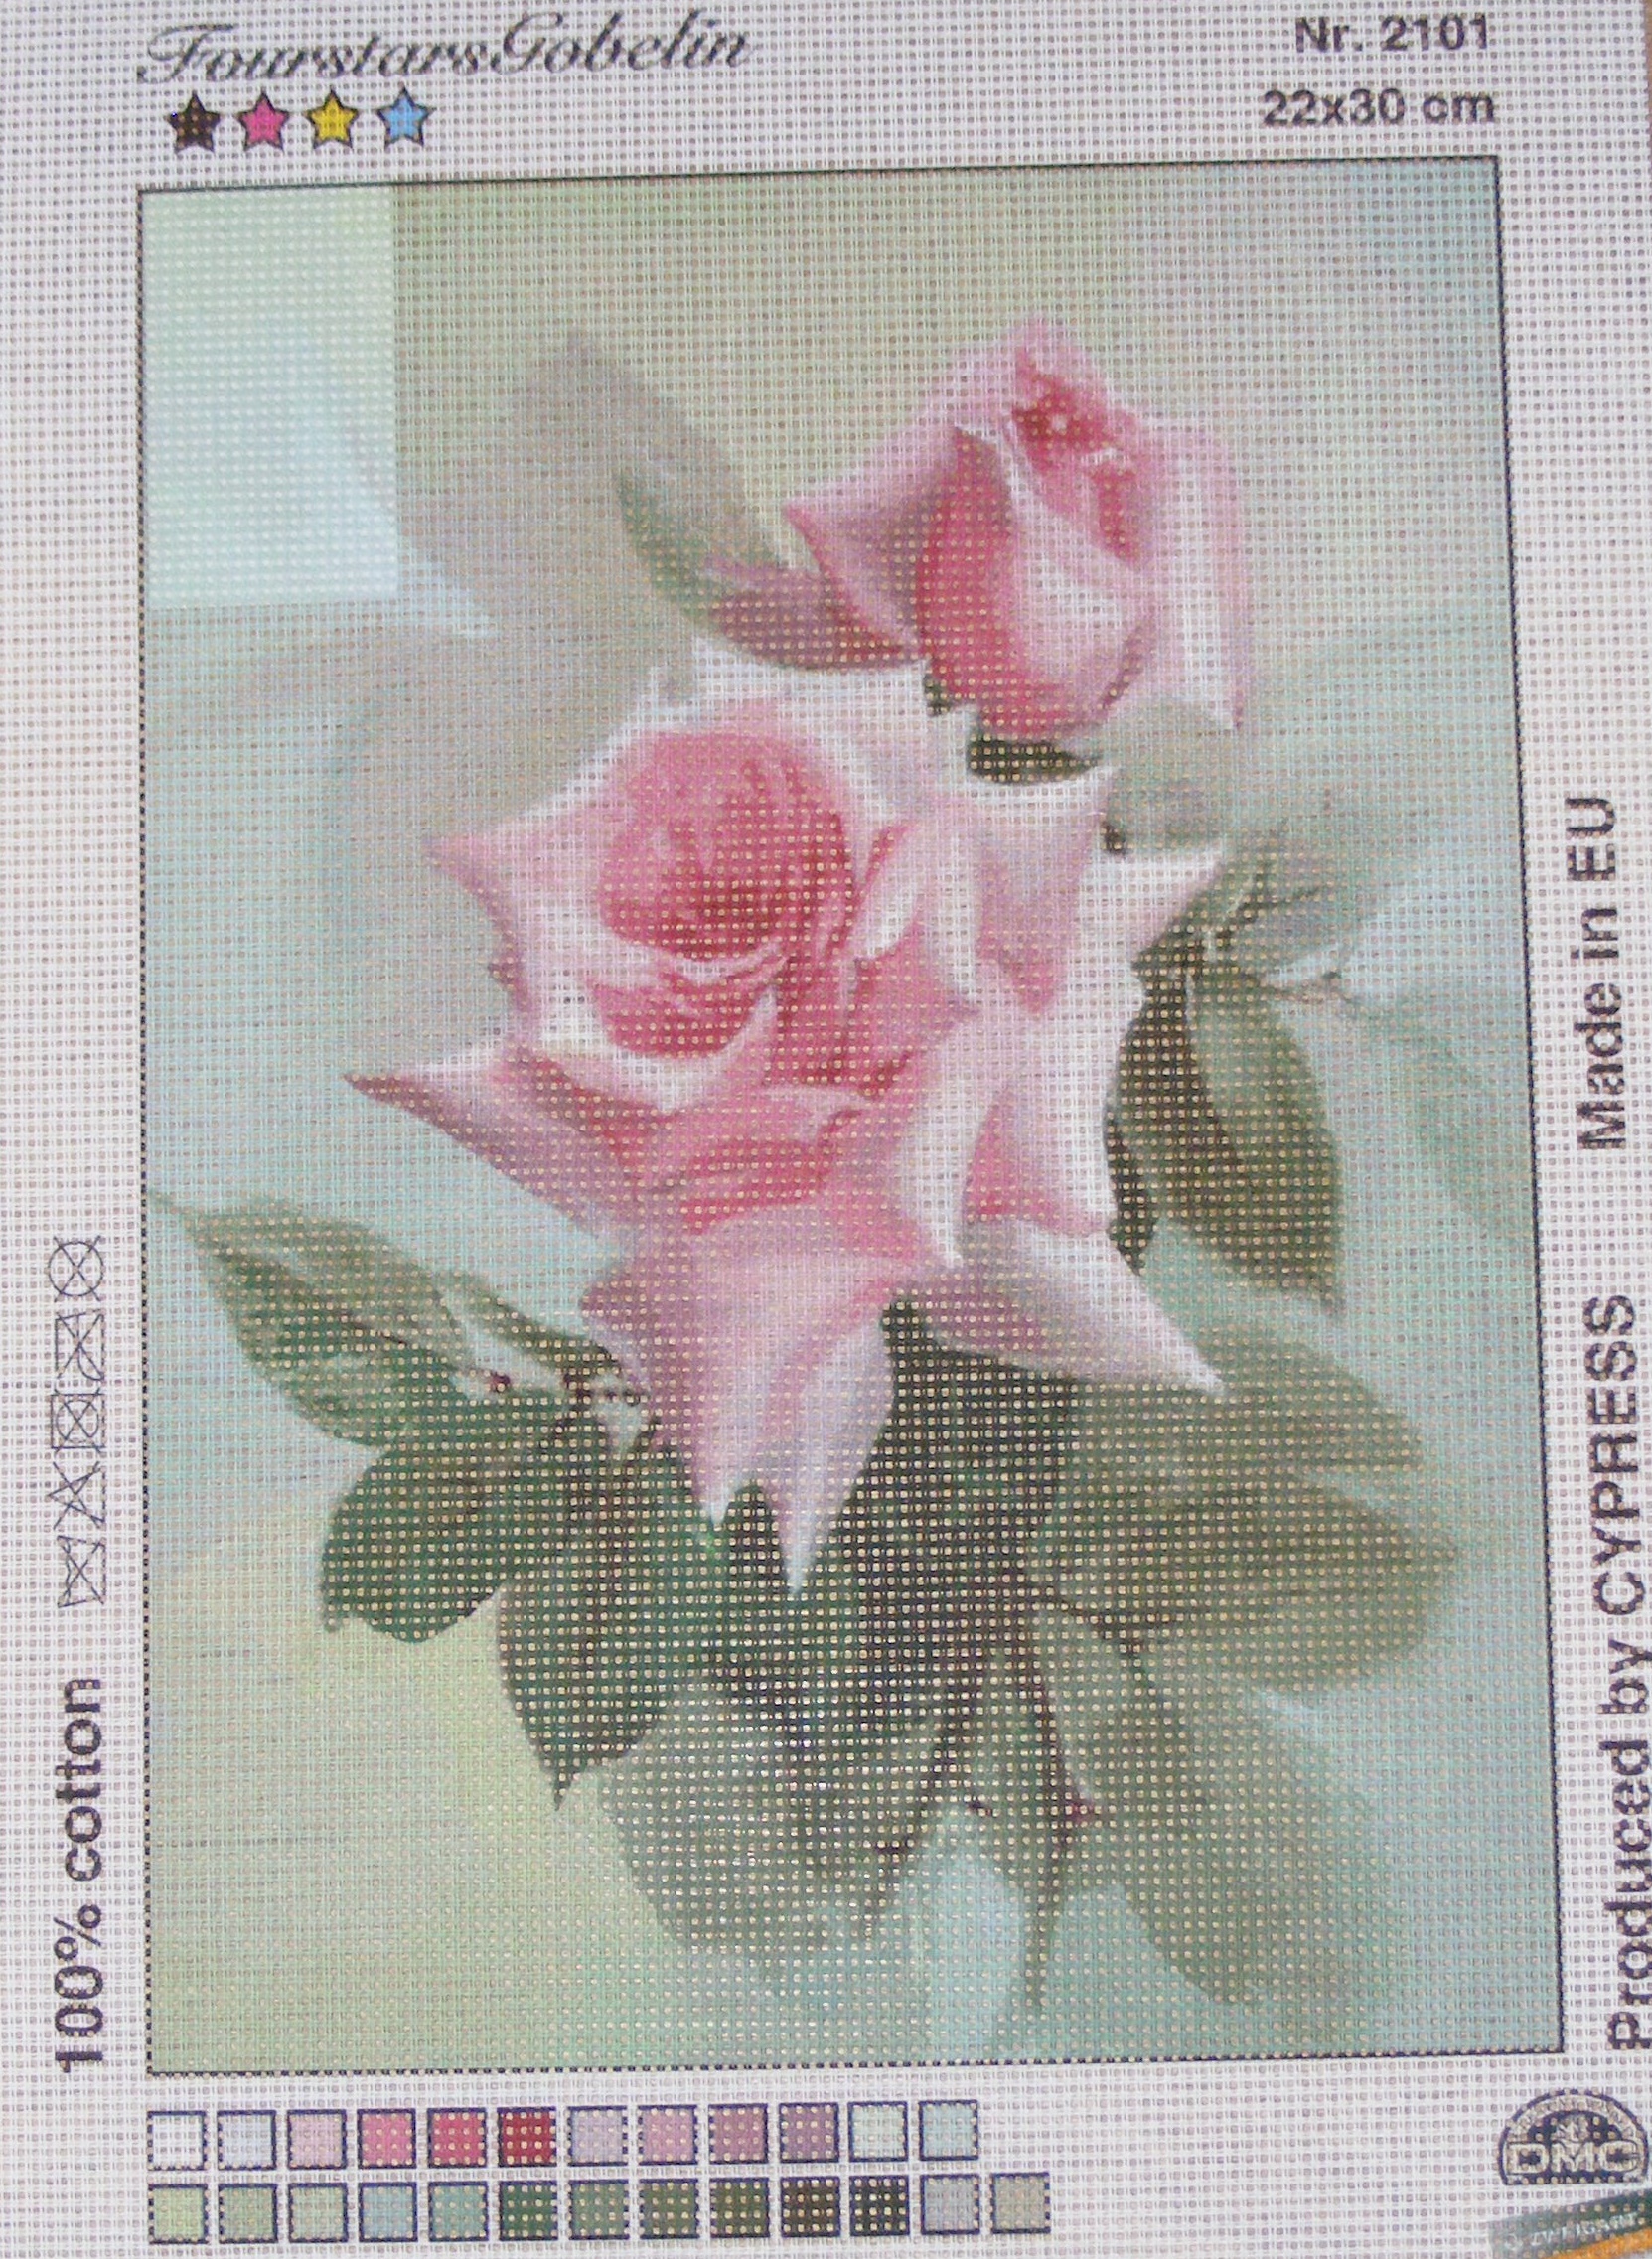 Gobelin 22x30 cm - Virág 2101